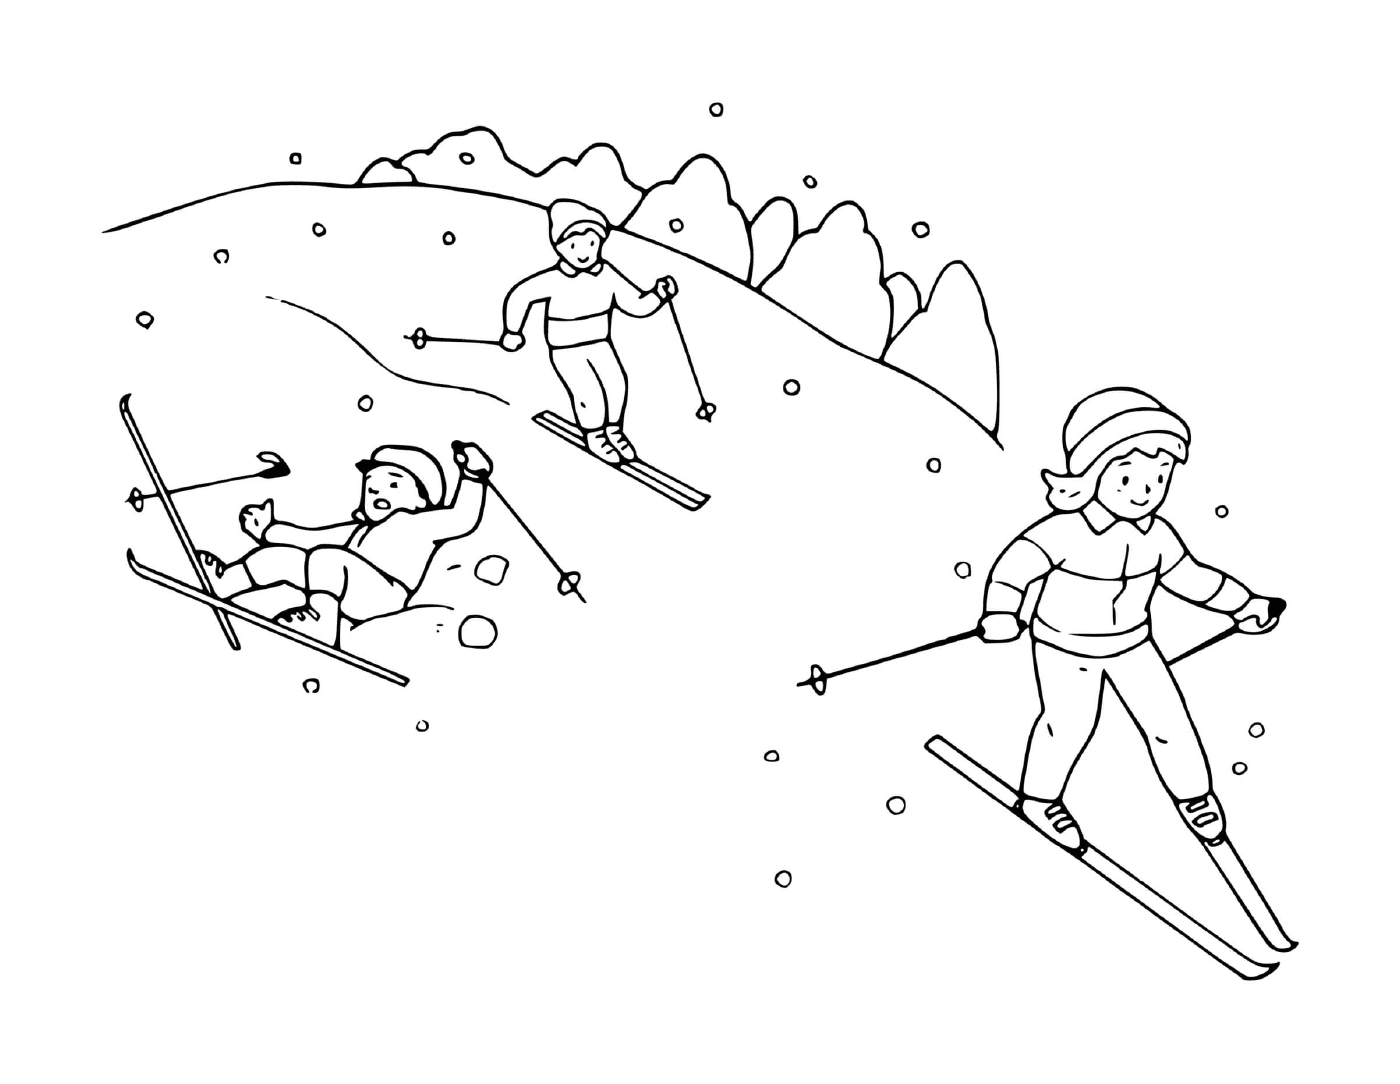  Família se divertindo esquiando juntos 